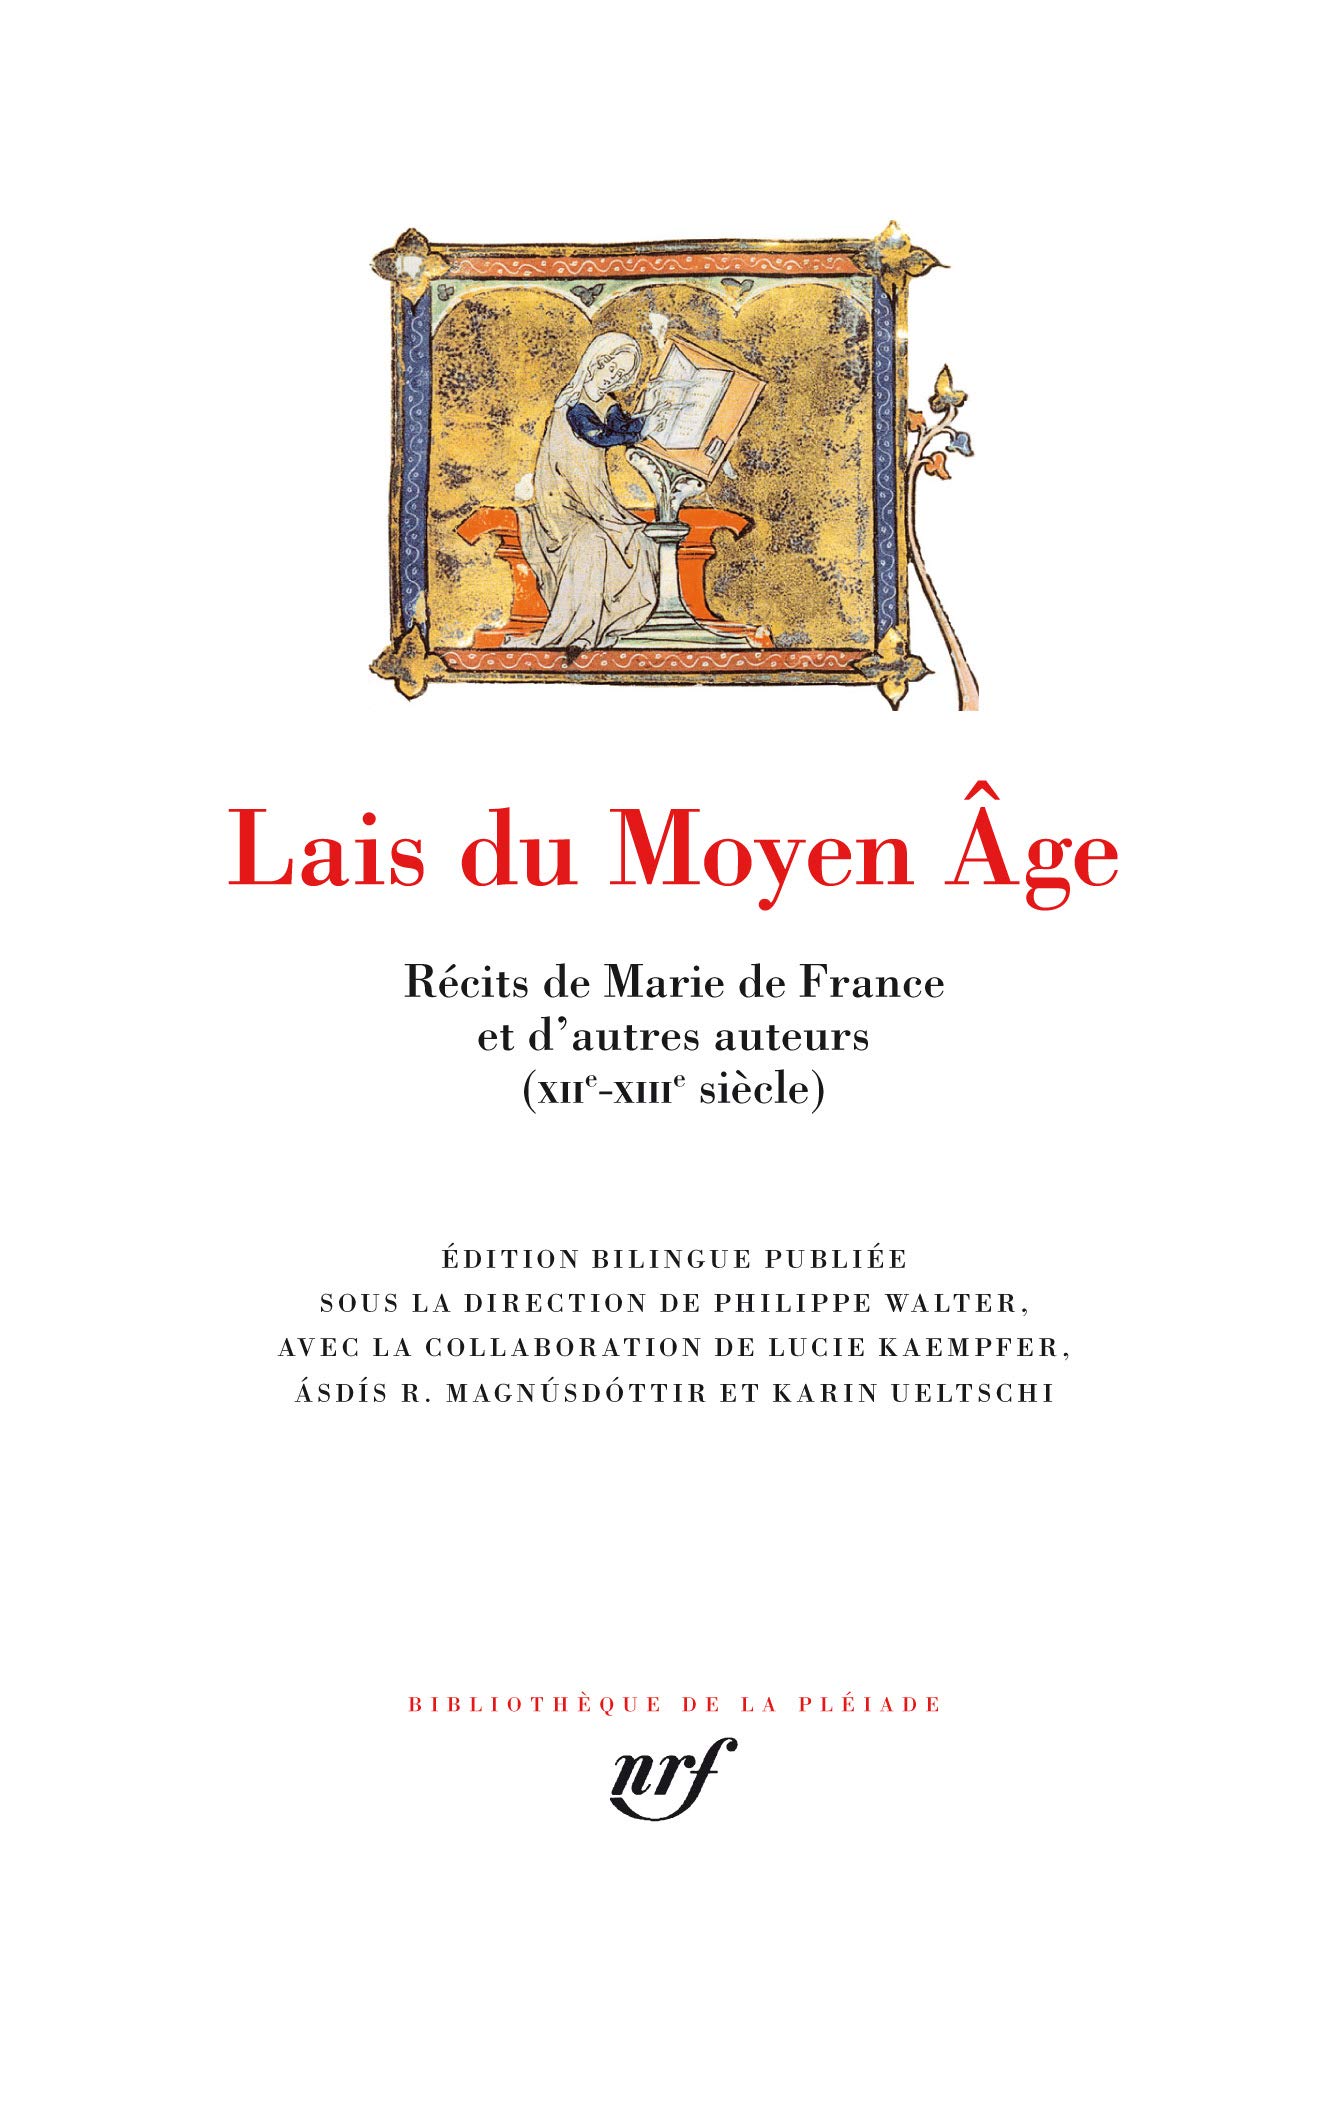 Lais du Moyen Age. Récits de Marie de France et d'autres auteurs (XIIe-XIIIe siècle), 2018, 1488 p.